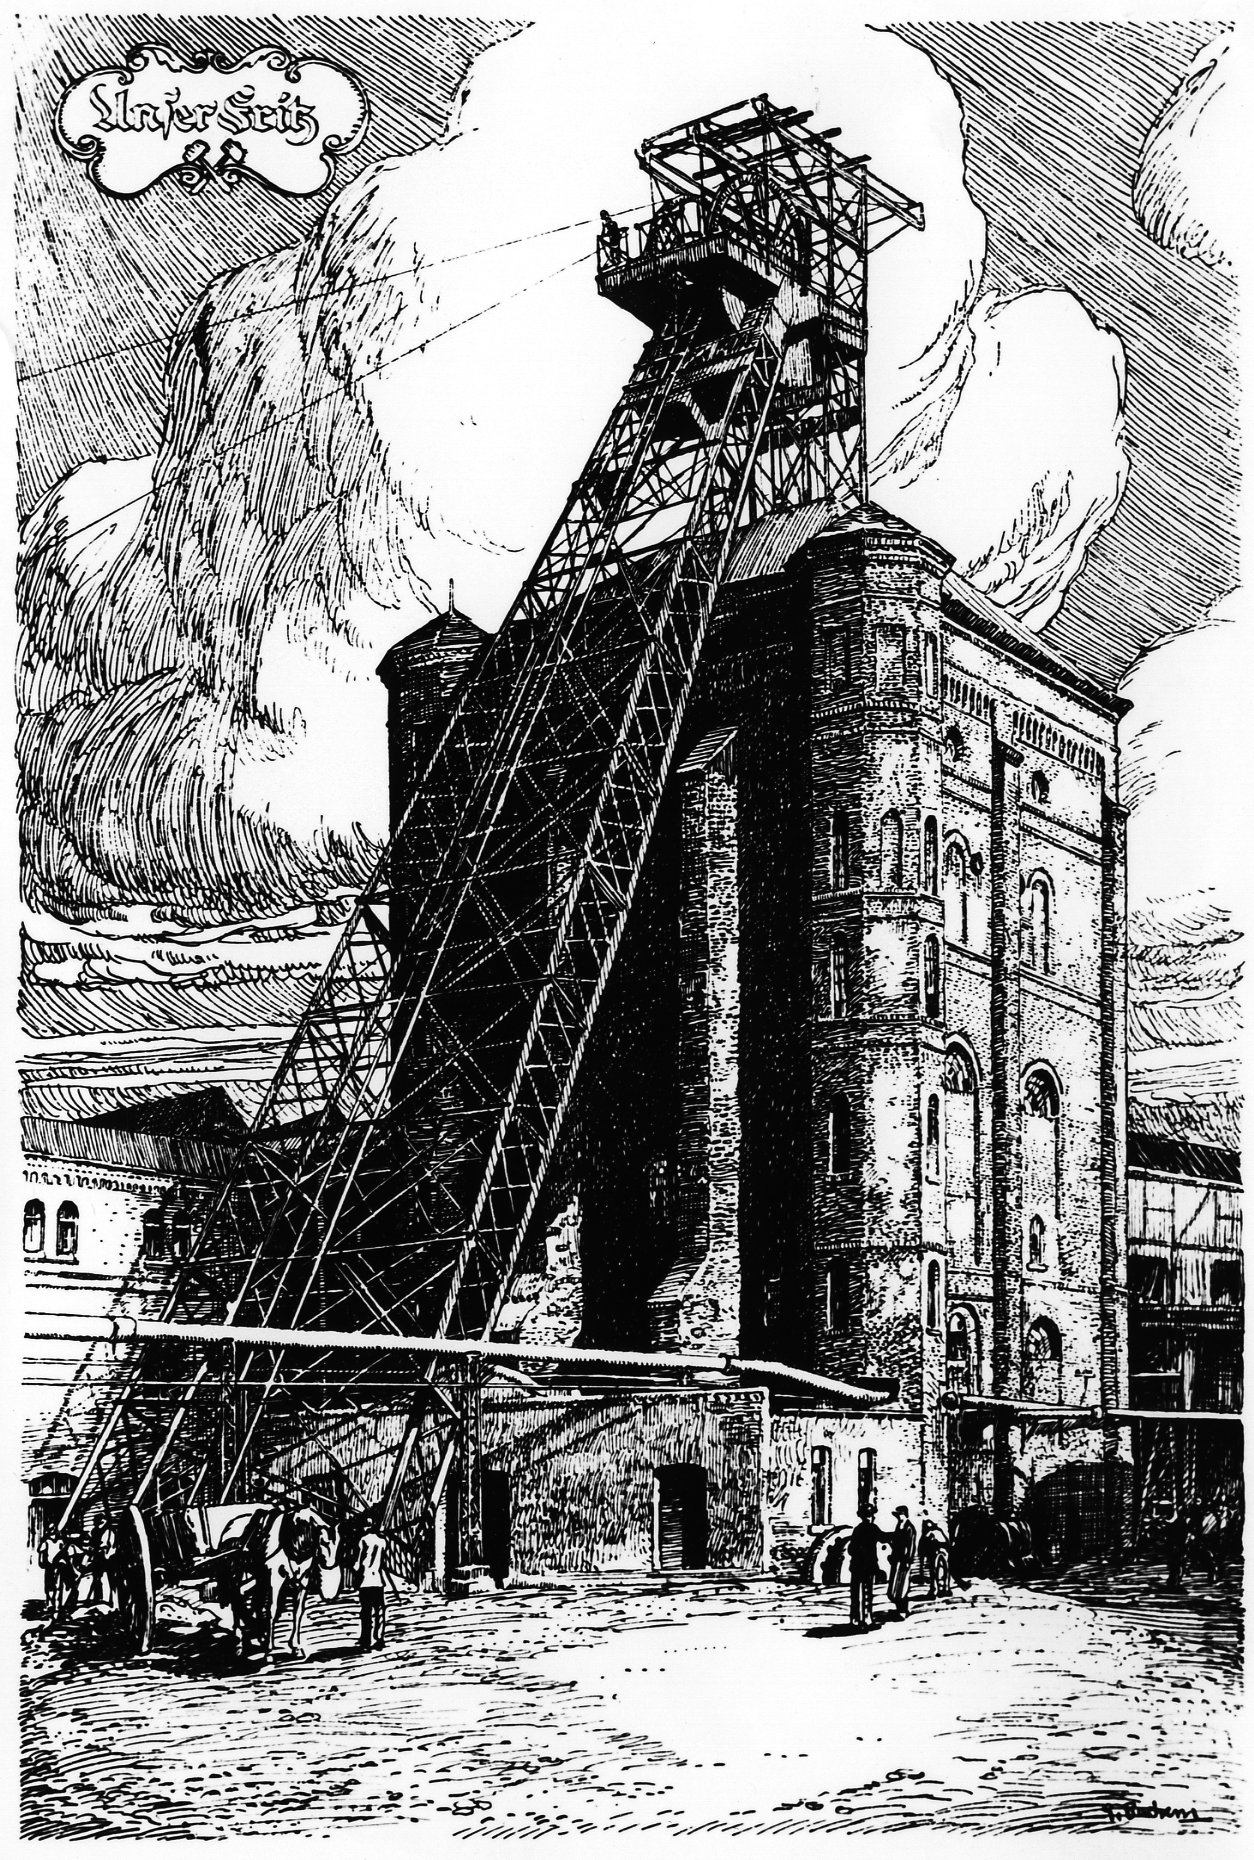 Malakowturm Schacht 1, Zeche Unser Fritz, Zeichnung von 1890.